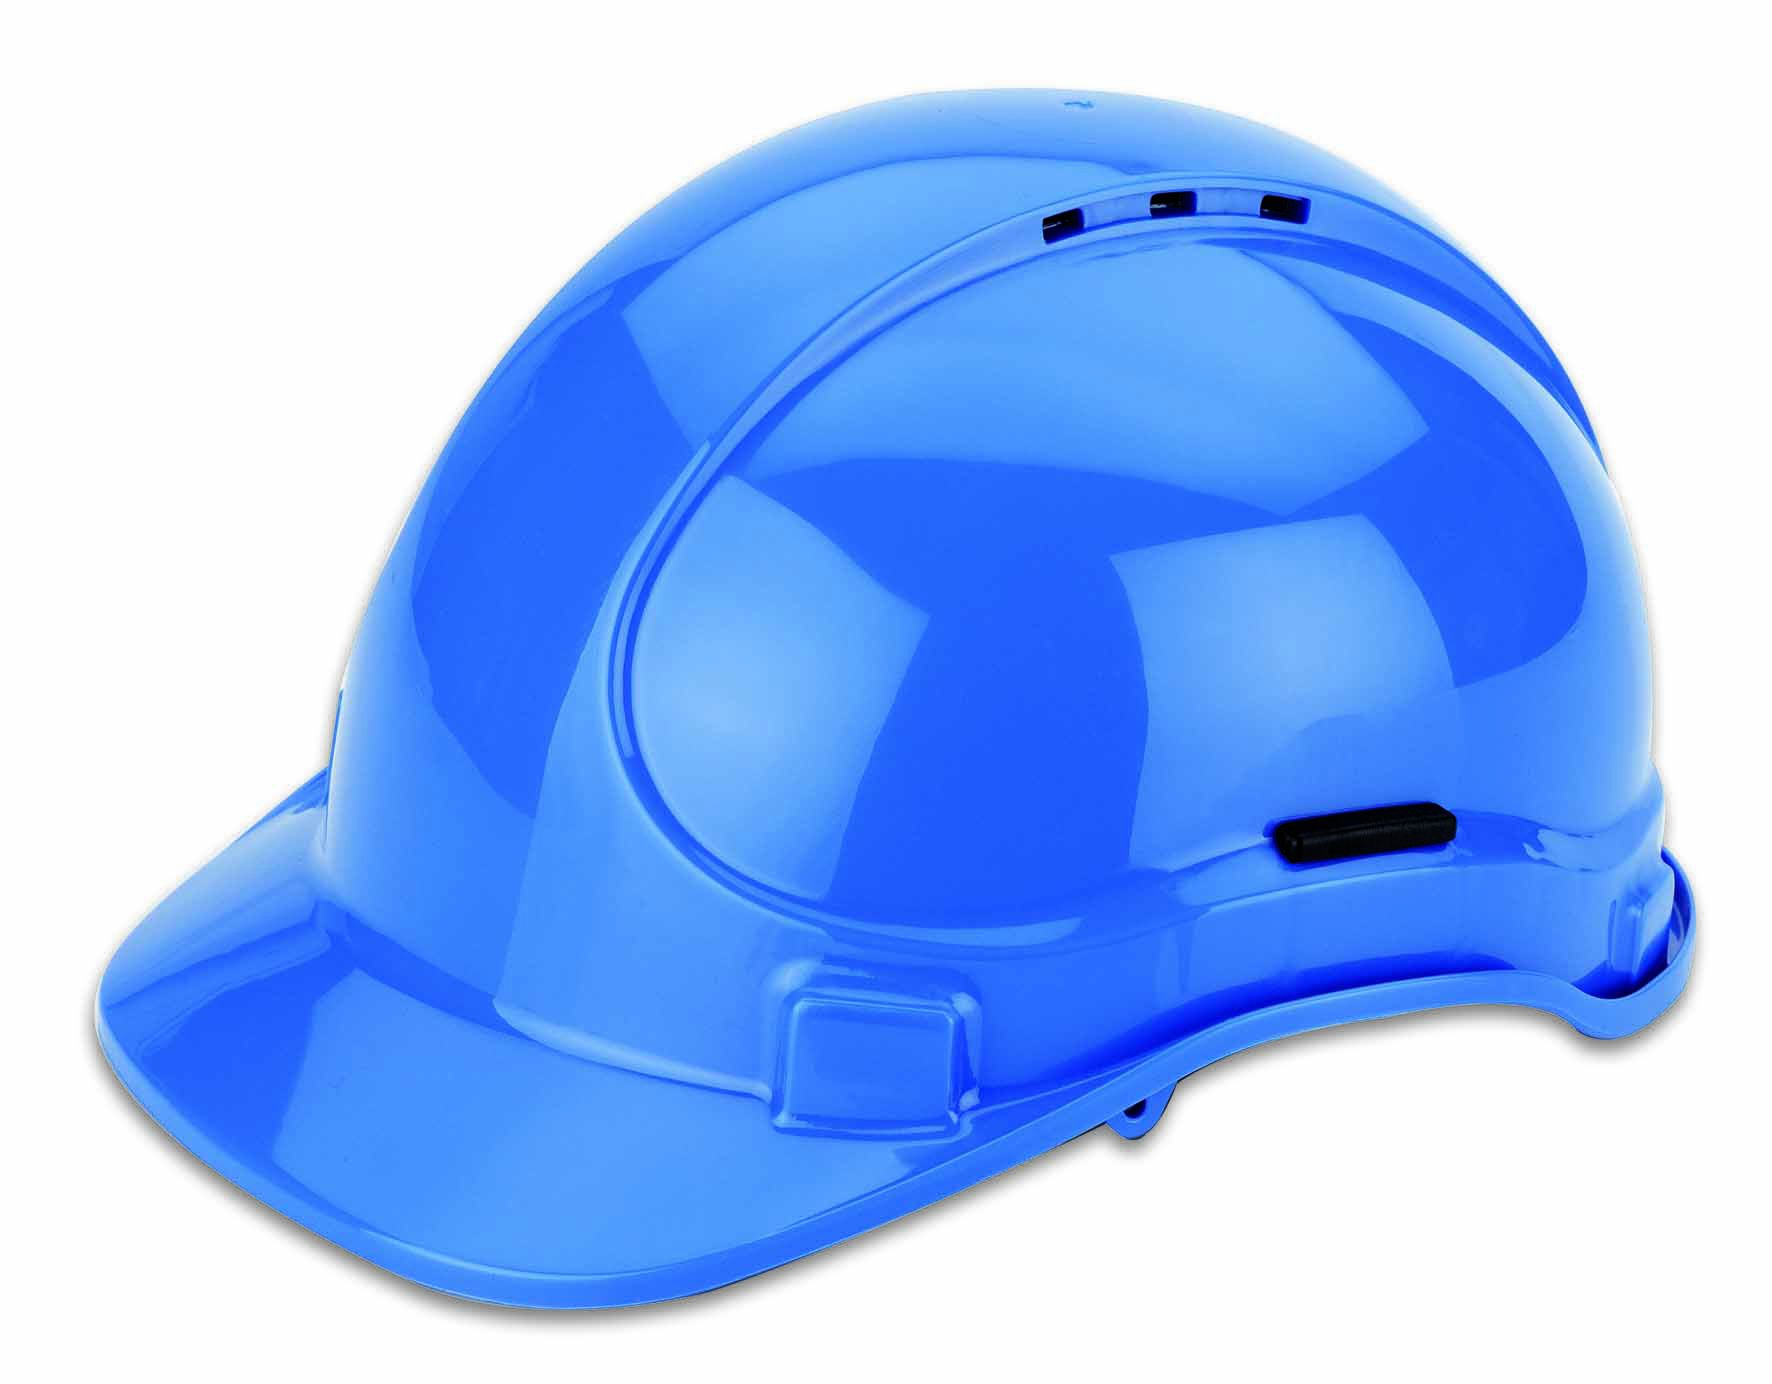 Elektriker- und Industrie-Schutzhelm, blau